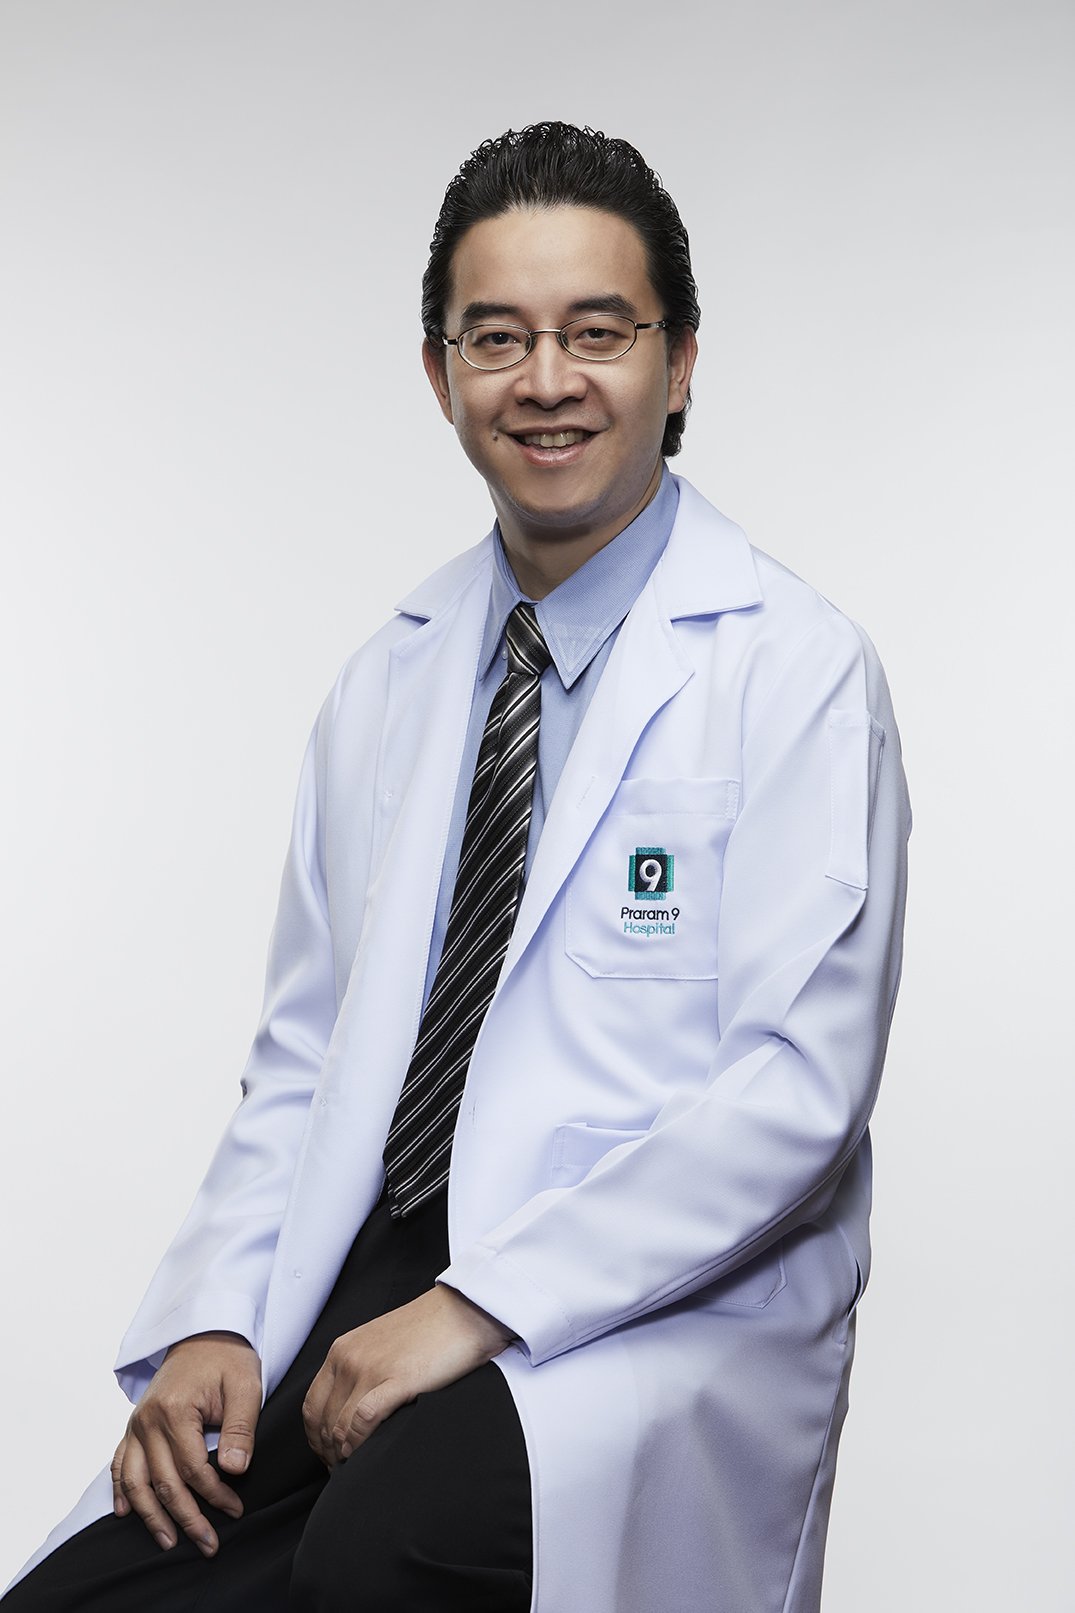 นพ.ธนพงศ์ ว่องวิริยะกุล แพทย์ผู้ชำนาญการด้านศัลยศาสต์ทั่วไปและการผ่าตัดส่องกล่อง โรงพยาบาลพระรามเก้า 